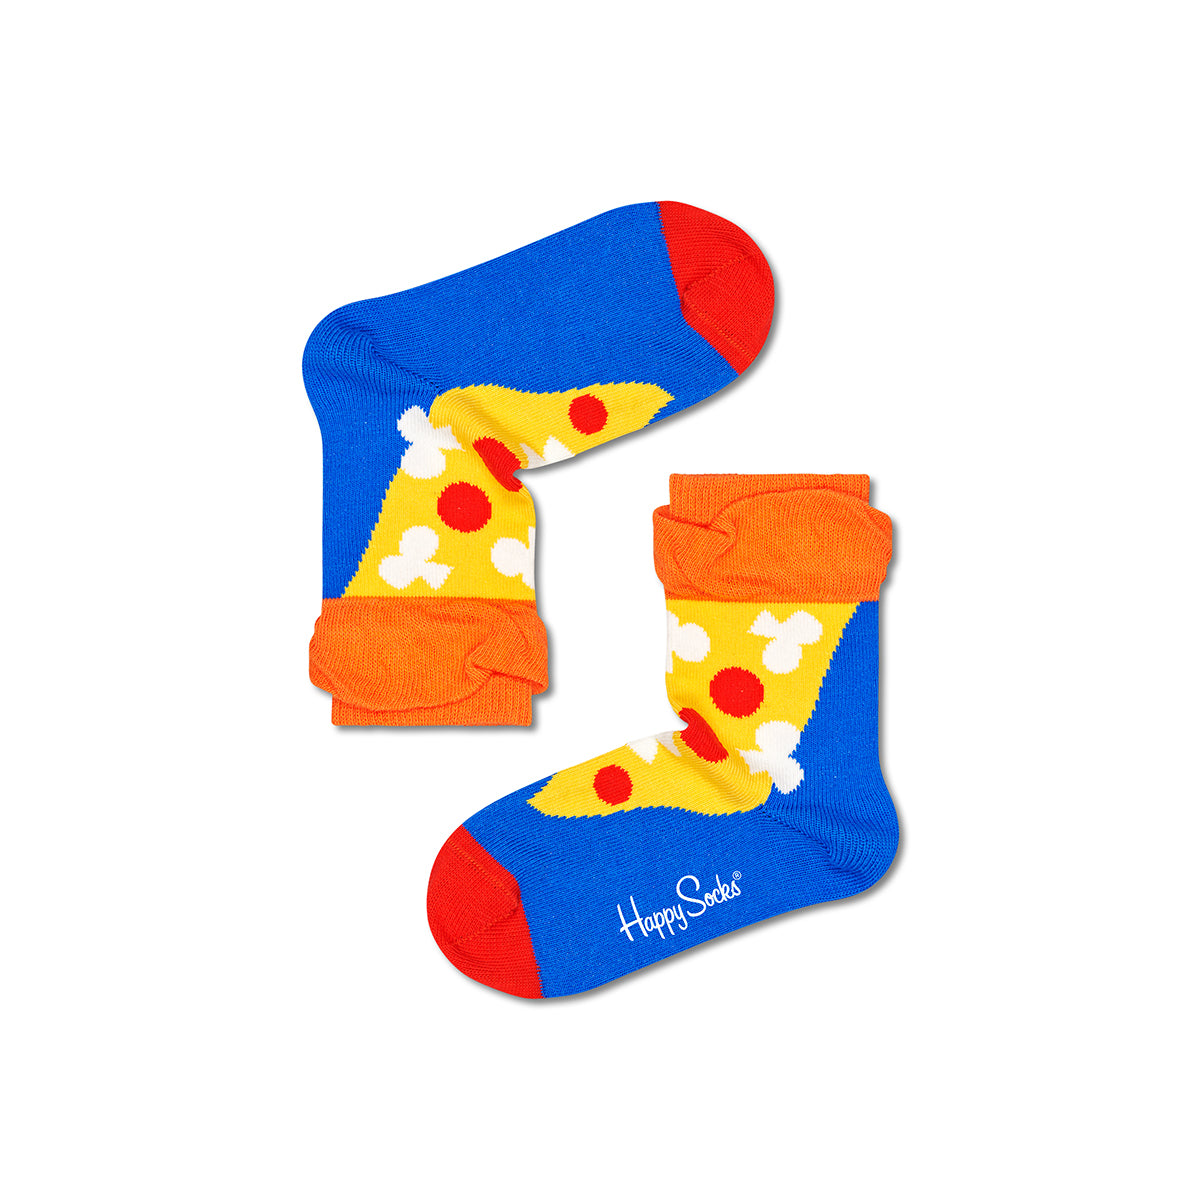 Kids Pizza Slice Sock (2200)